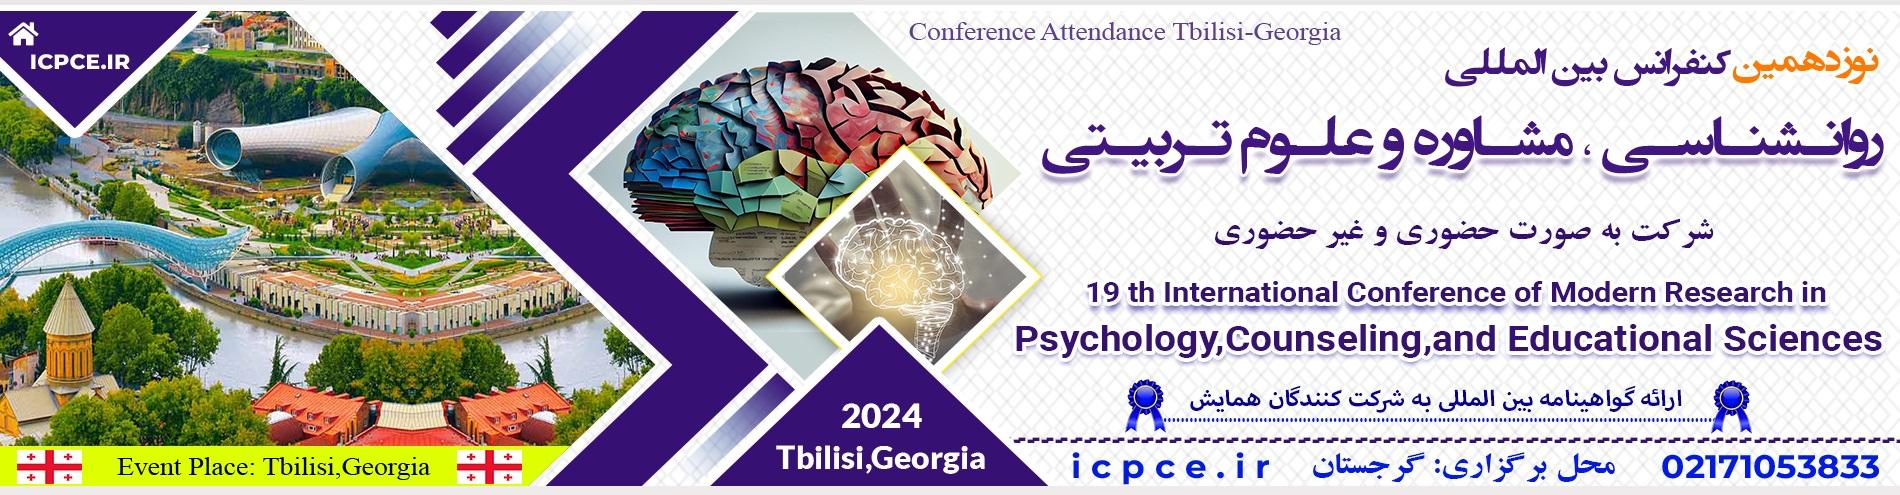 کنفرانس بین المللی روانشناسی،مشاوره و علوم تربیتی